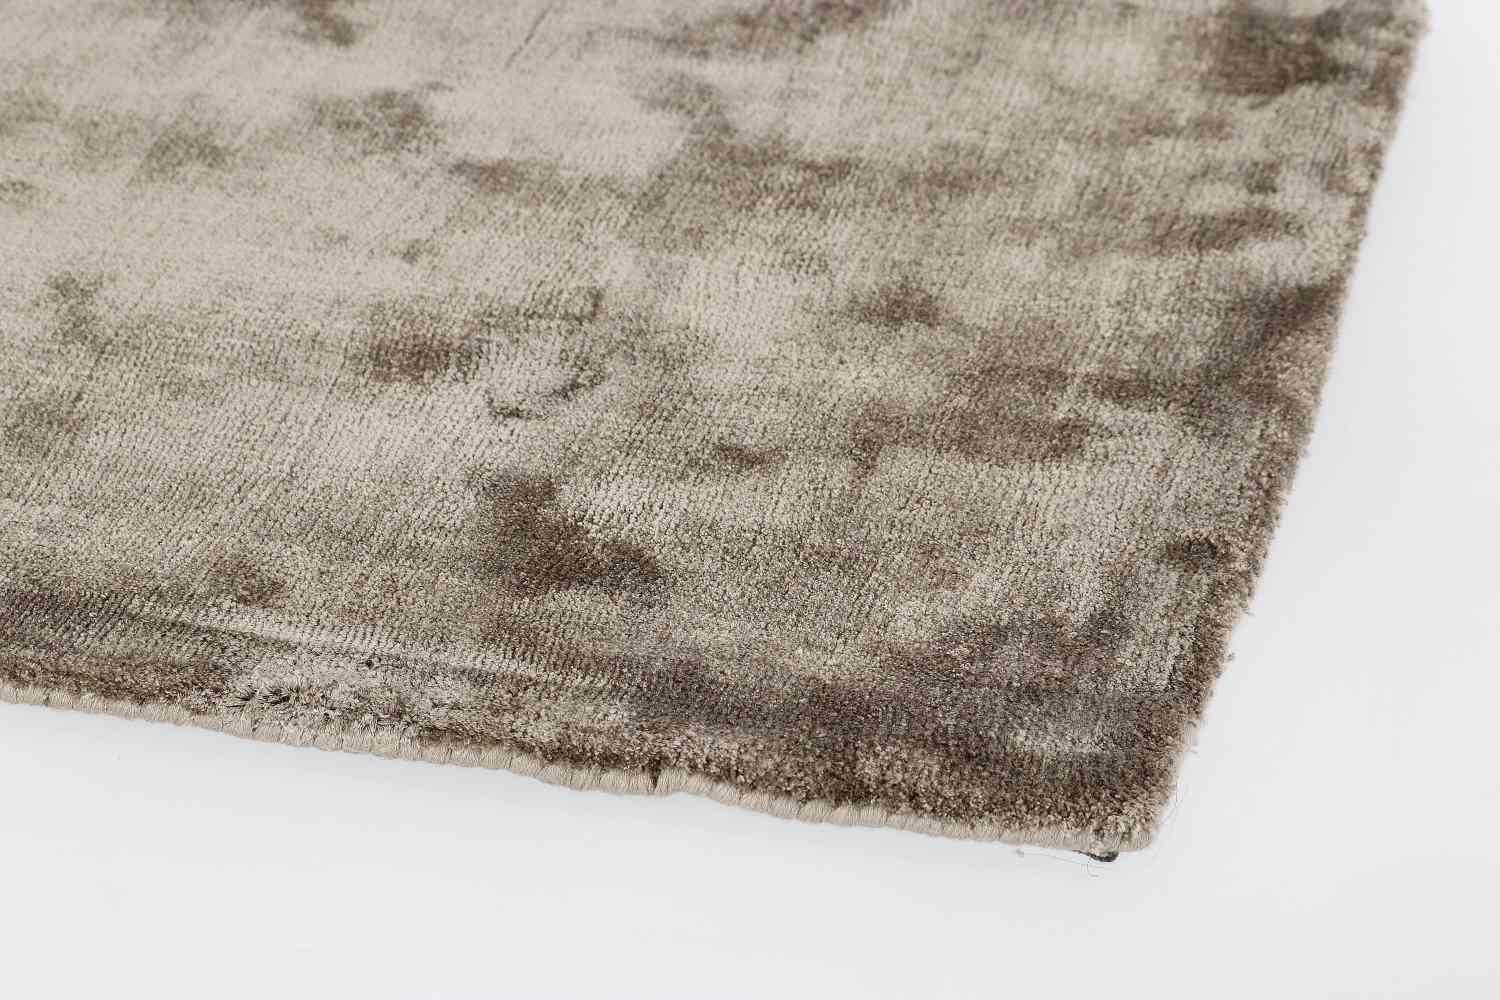 Der Teppich Samadhi überzeugt mit seinem modernen Design. Gefertigt wurde die Vorderseite aus Viskose und die Rückseite ist aus Baumwolle. Der Teppich besitzt einen braunen Farbton und die Maße von 140x200 cm.